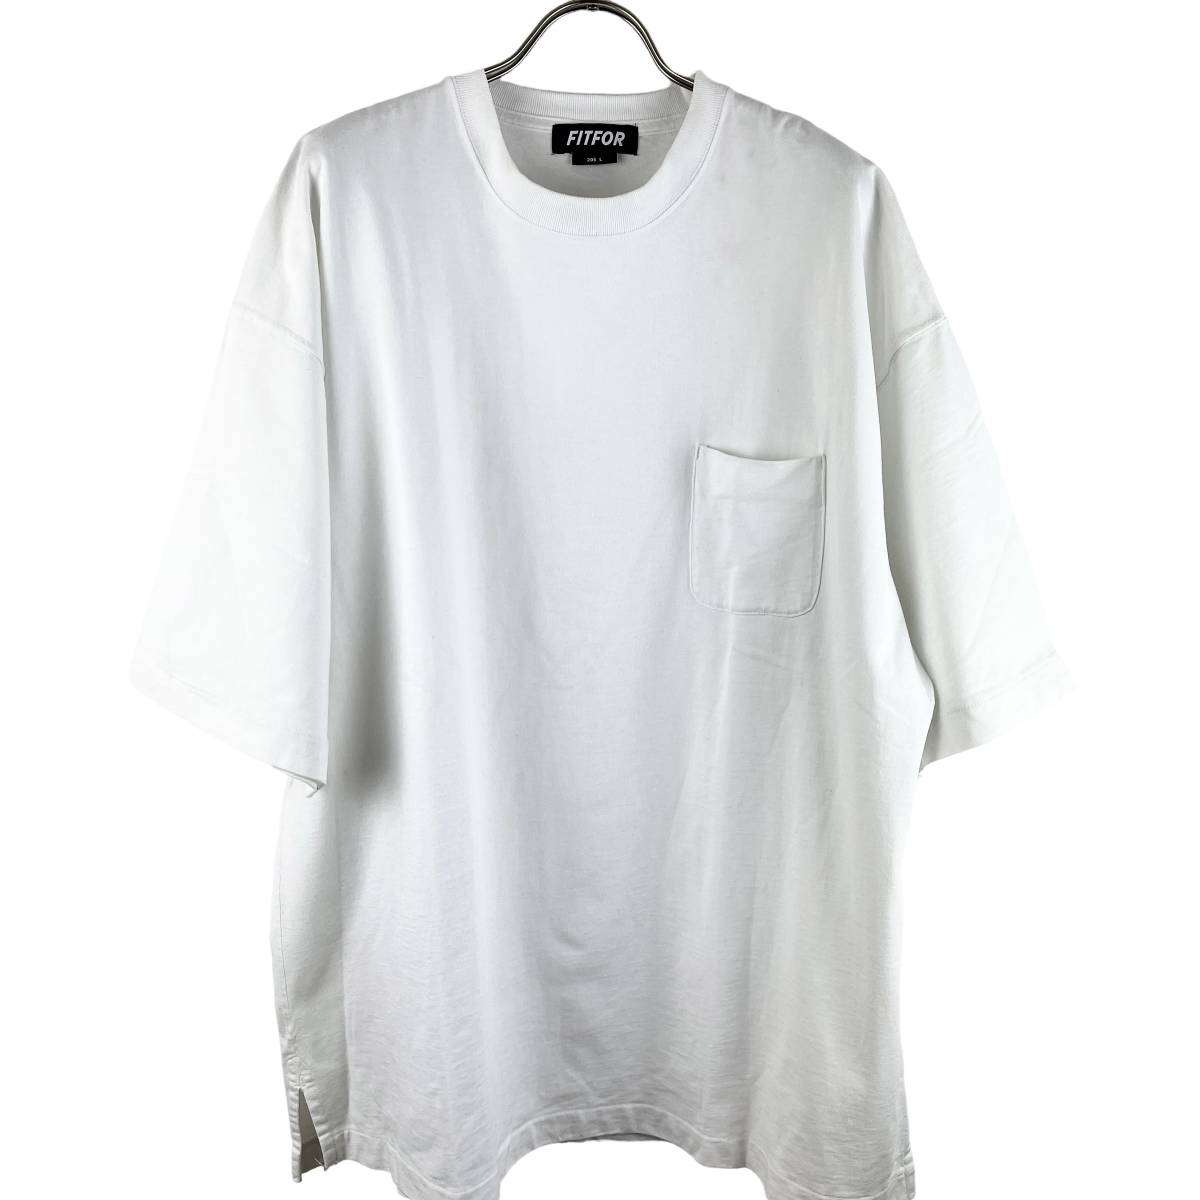 Fit For(フットフォー) Oversized Pocket T Shirt (white)-